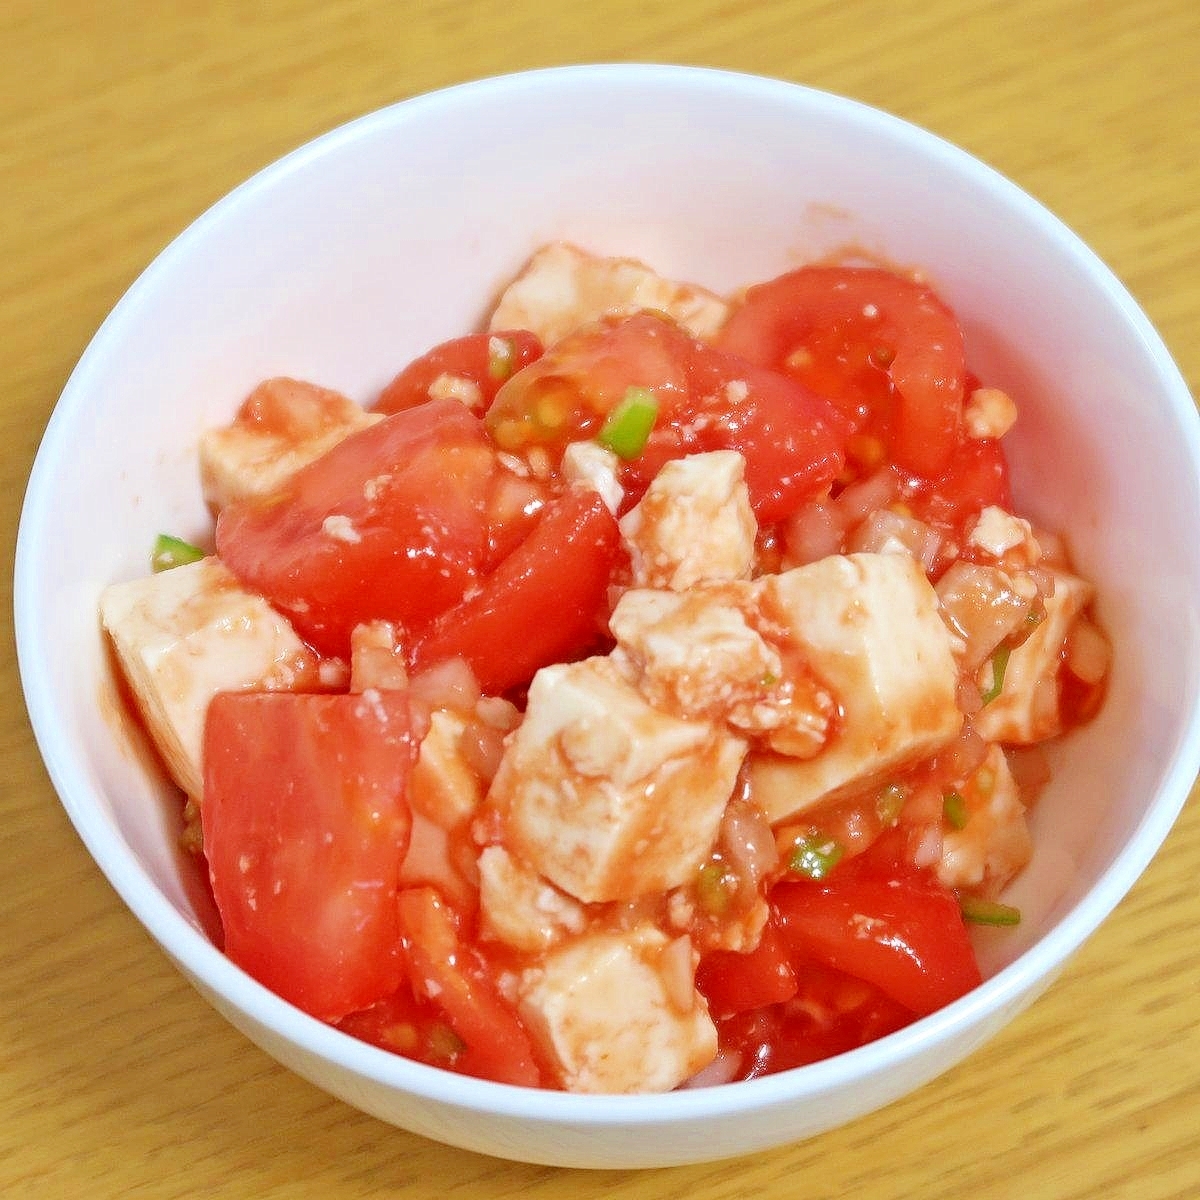 豆腐とトマトのフレッシュサルサ風サラダ